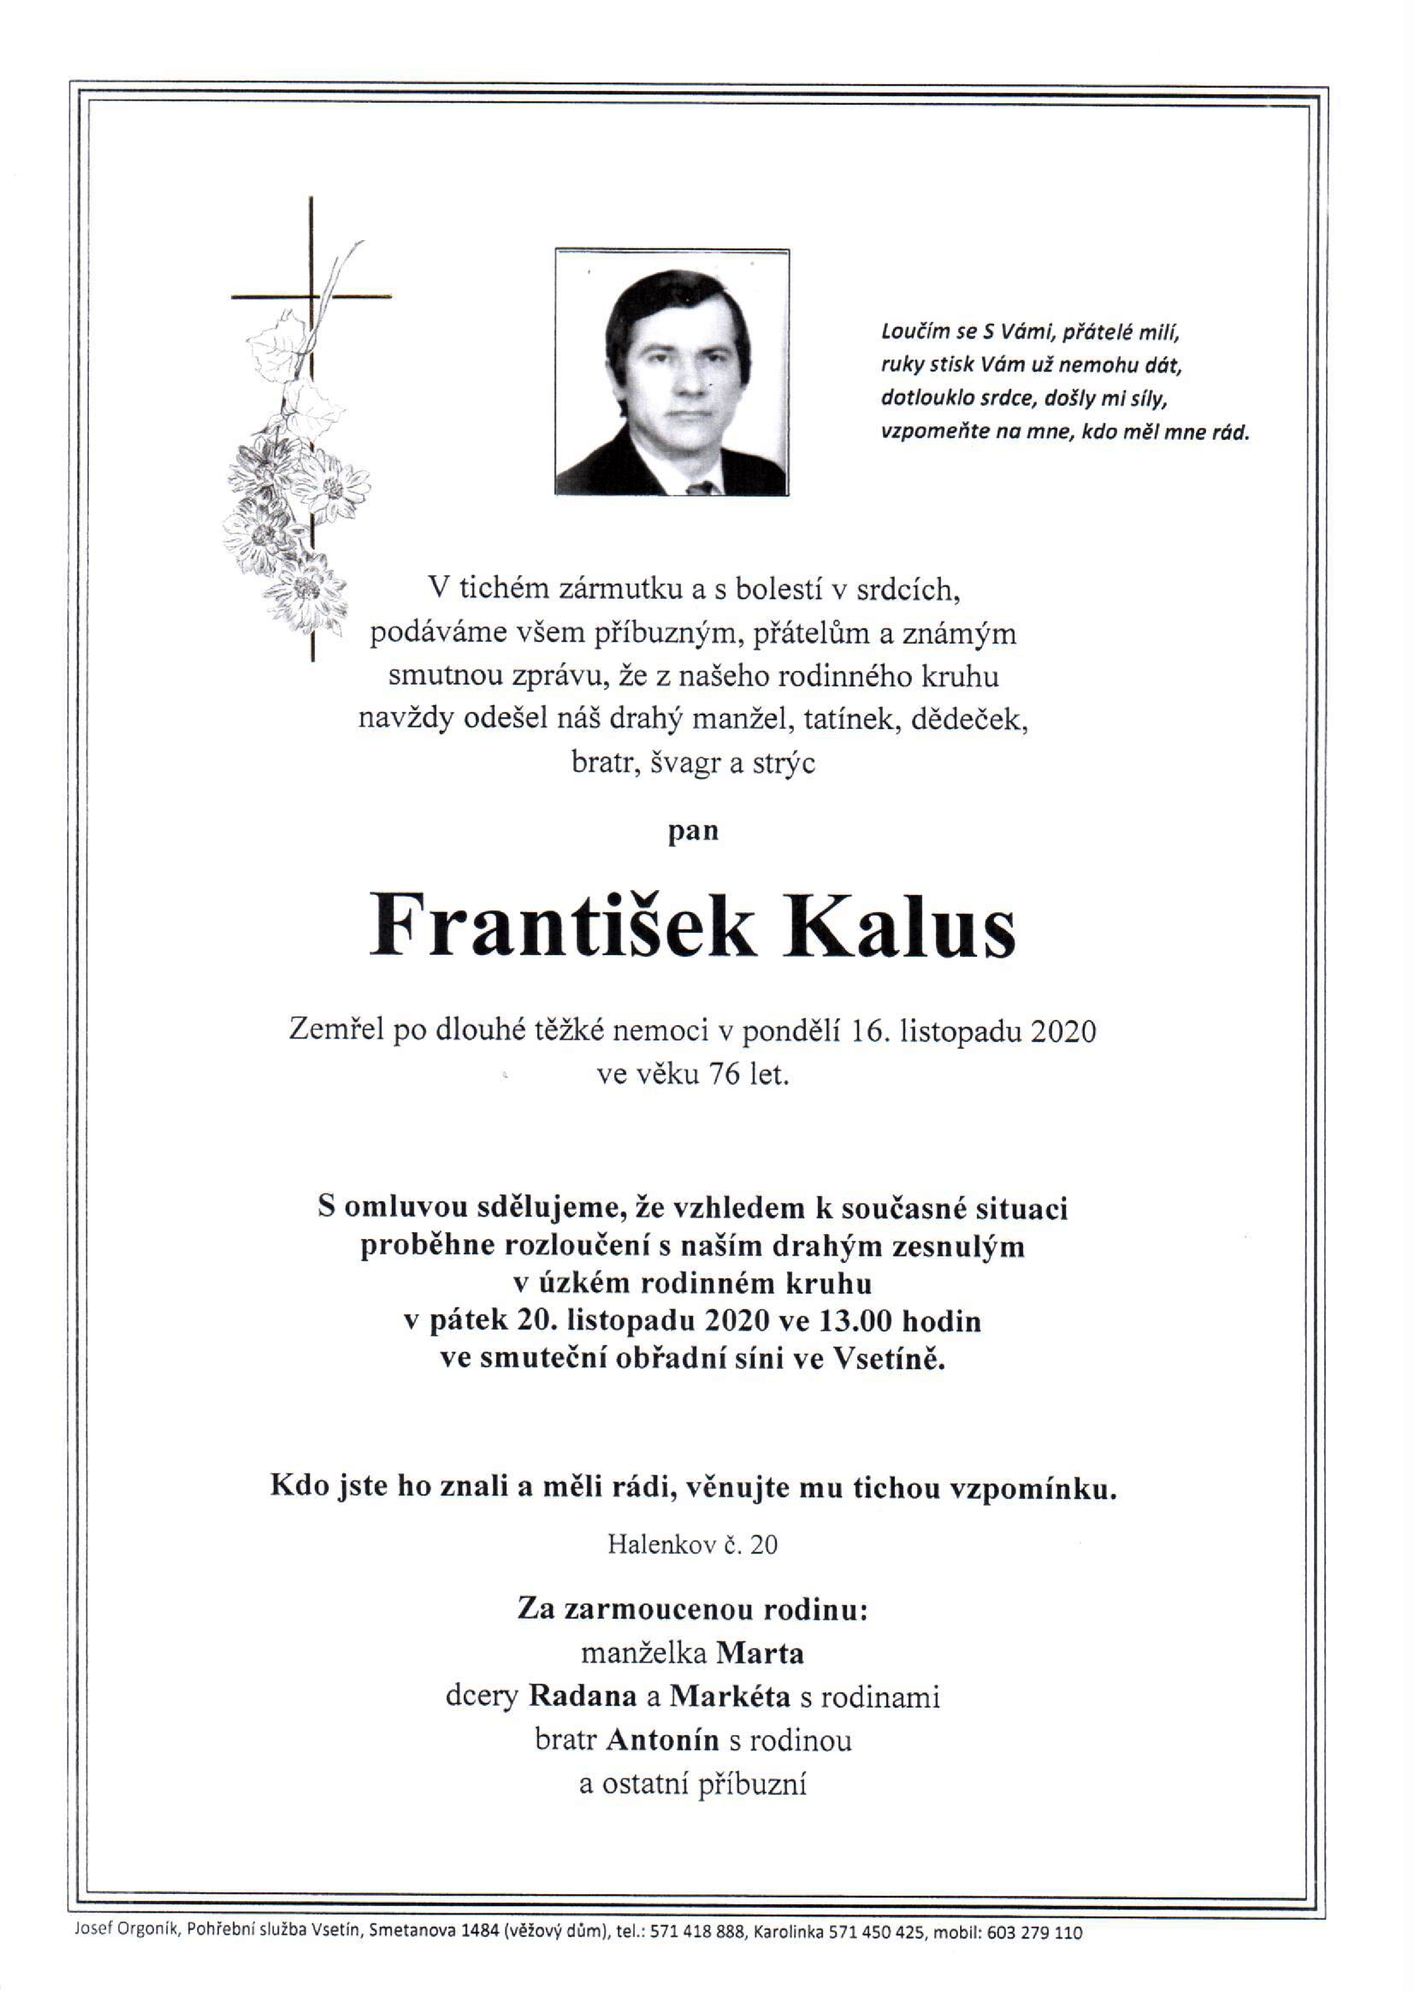 František Kalus